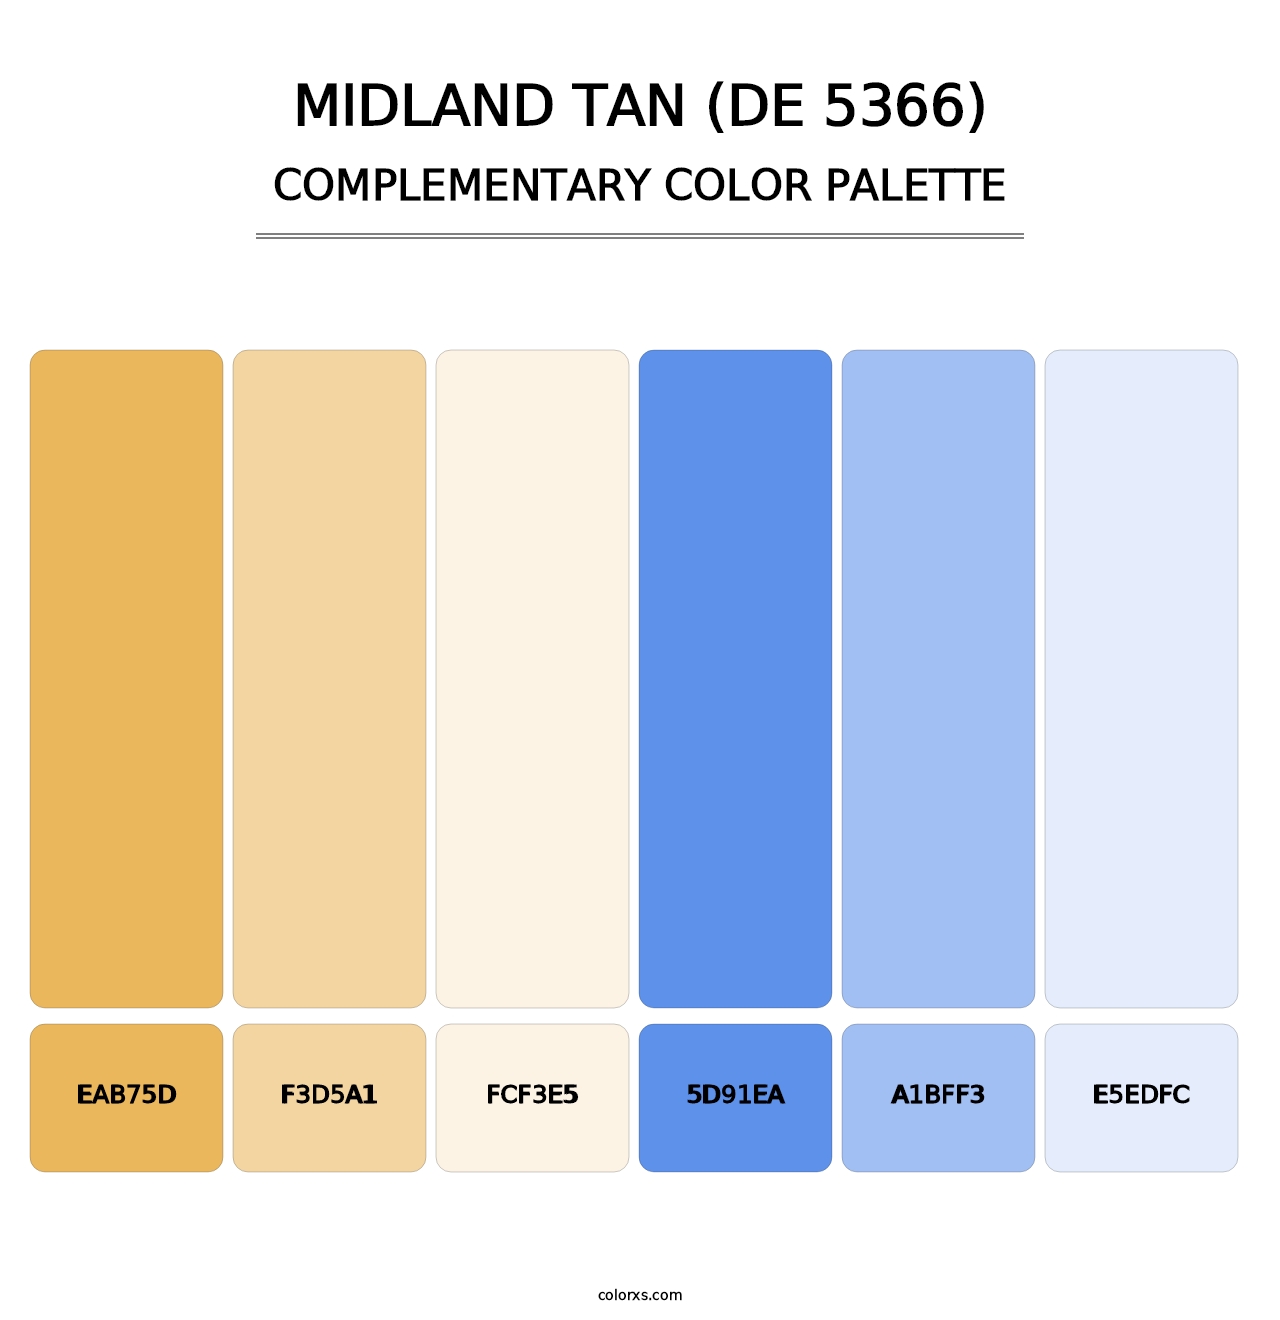 Midland Tan (DE 5366) - Complementary Color Palette